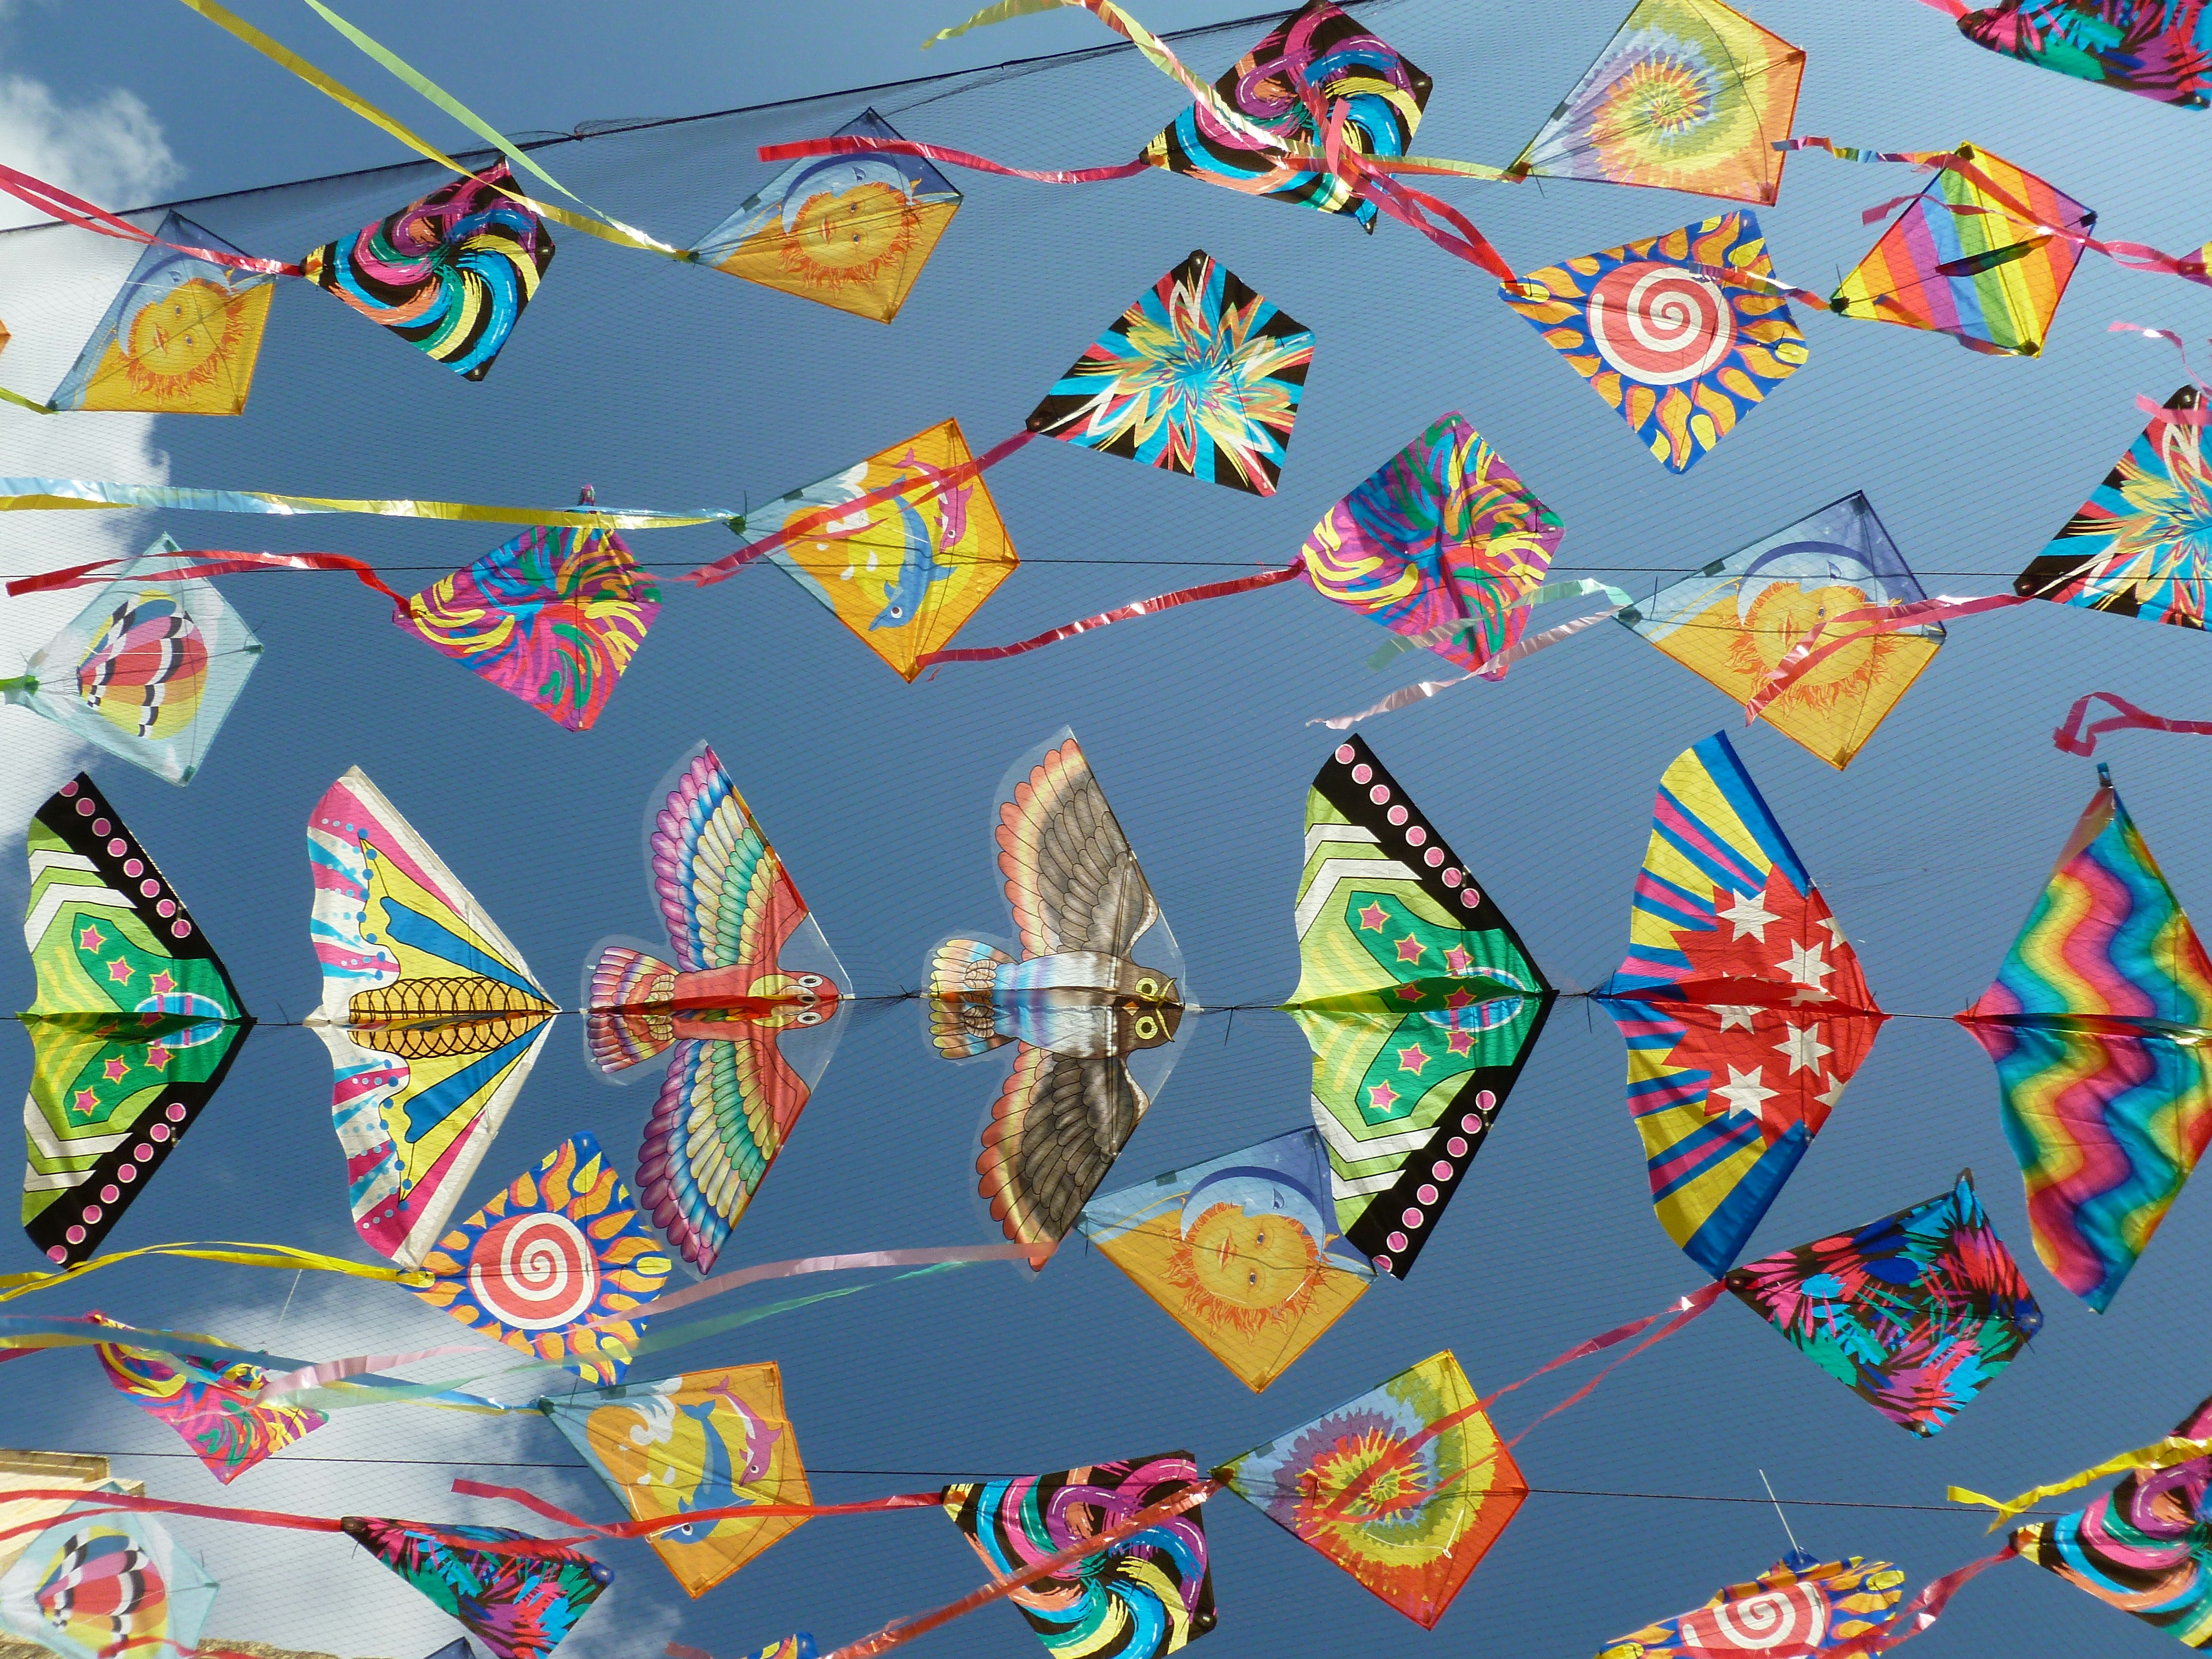 Kite Festival at Bondi Beach Draws Kite Lovers from Across Australia